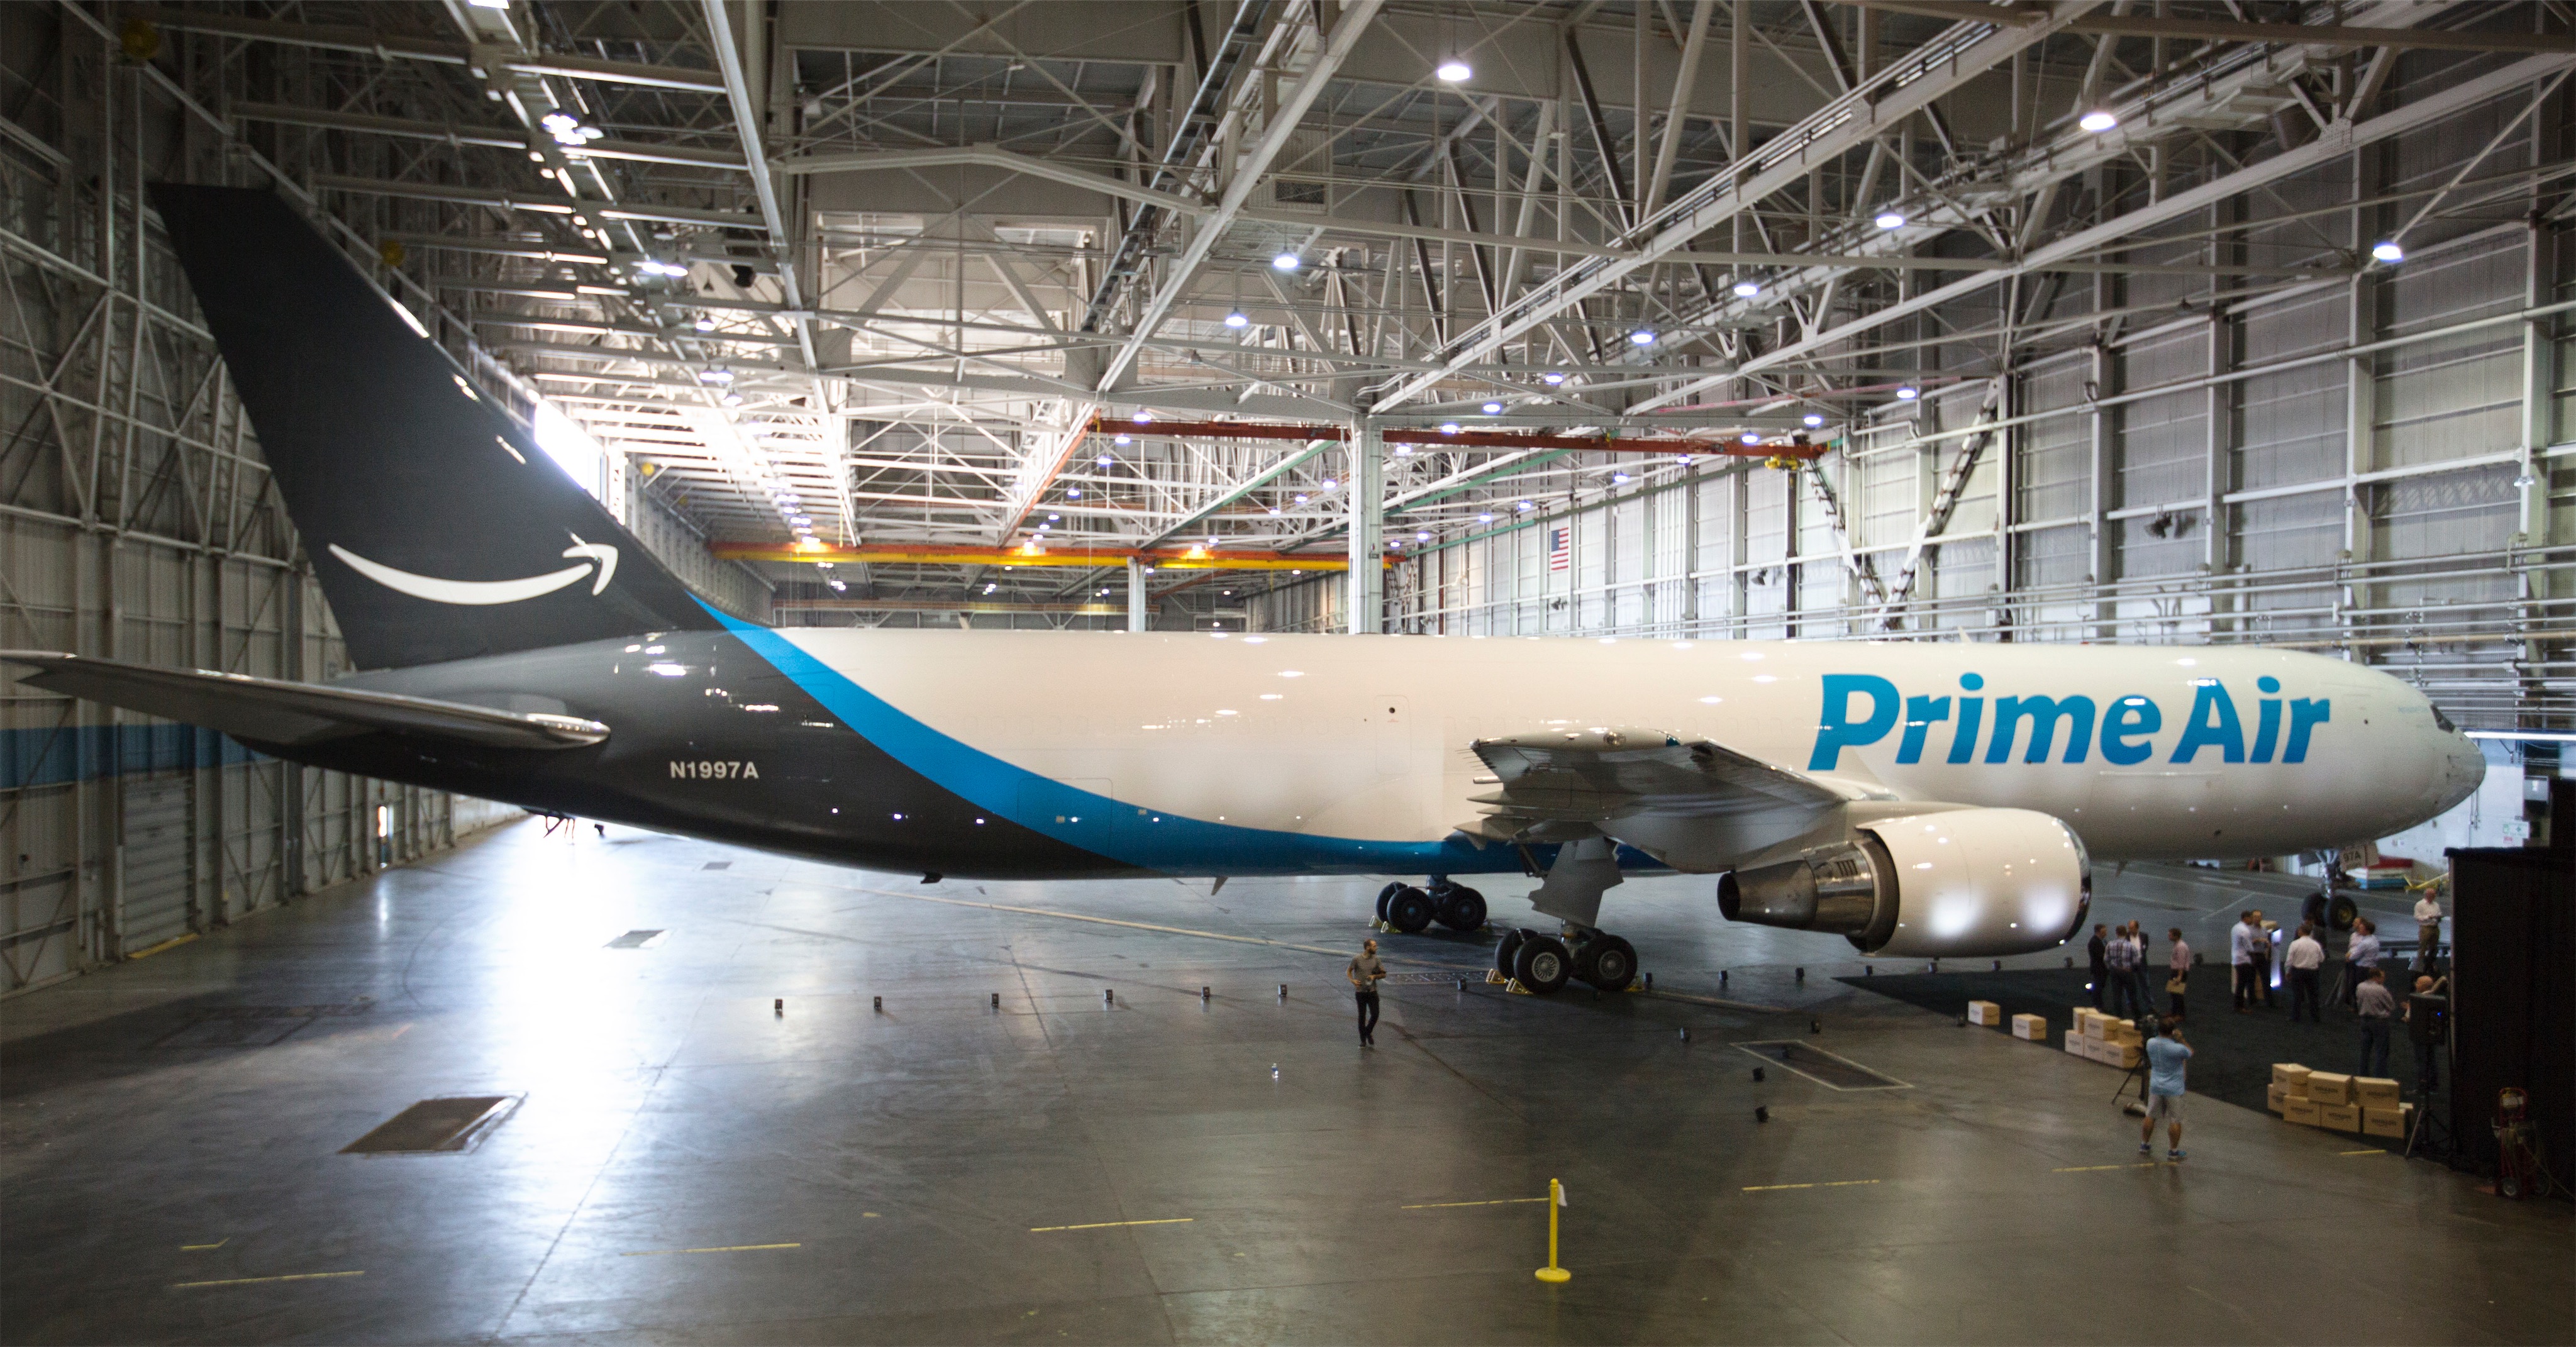 Prime Air : une flotte de gros porteurs pour Amazon